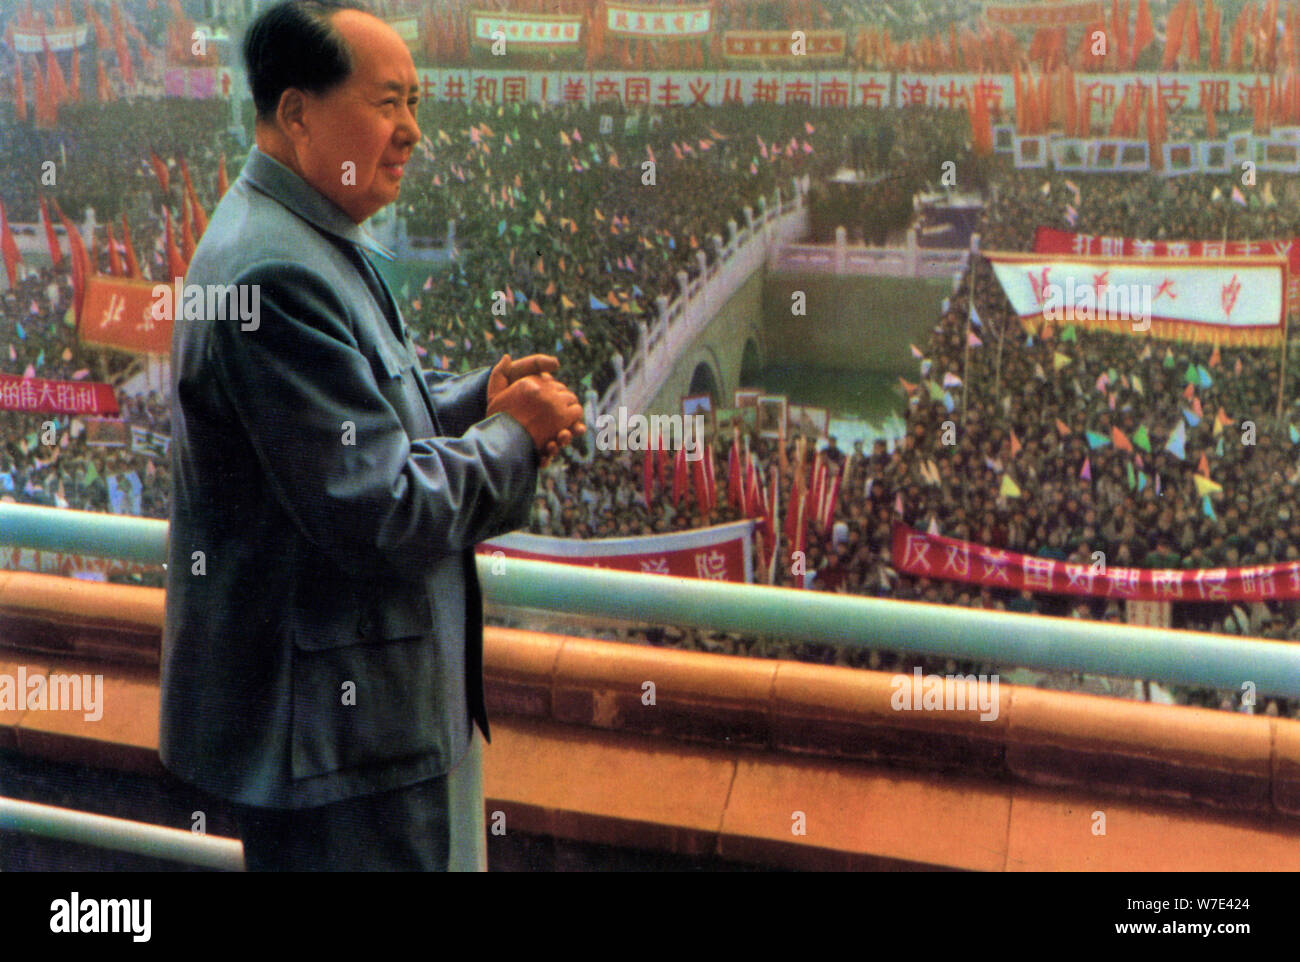 Mao Zedong, leader communiste chinois et révolutionnaire, c1950s-c1960s( ?). Artiste : Inconnu Banque D'Images